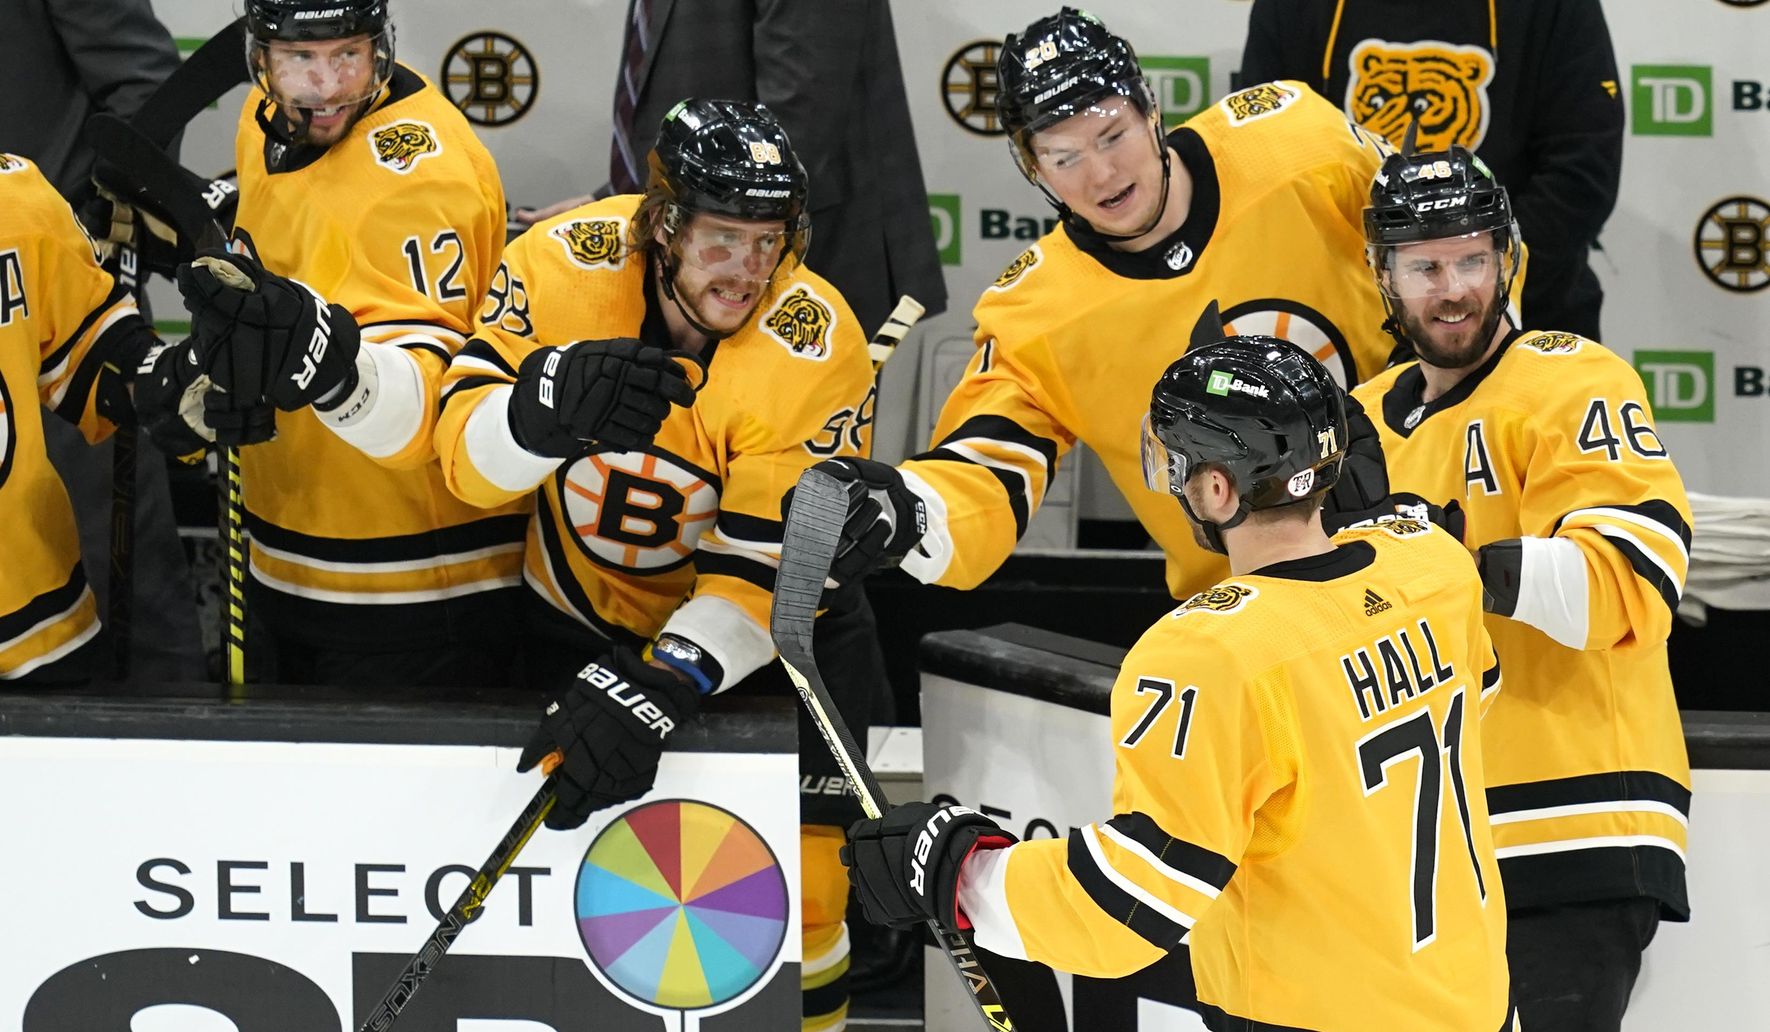 Hall, Rask lead Bruins past Islanders 4-1